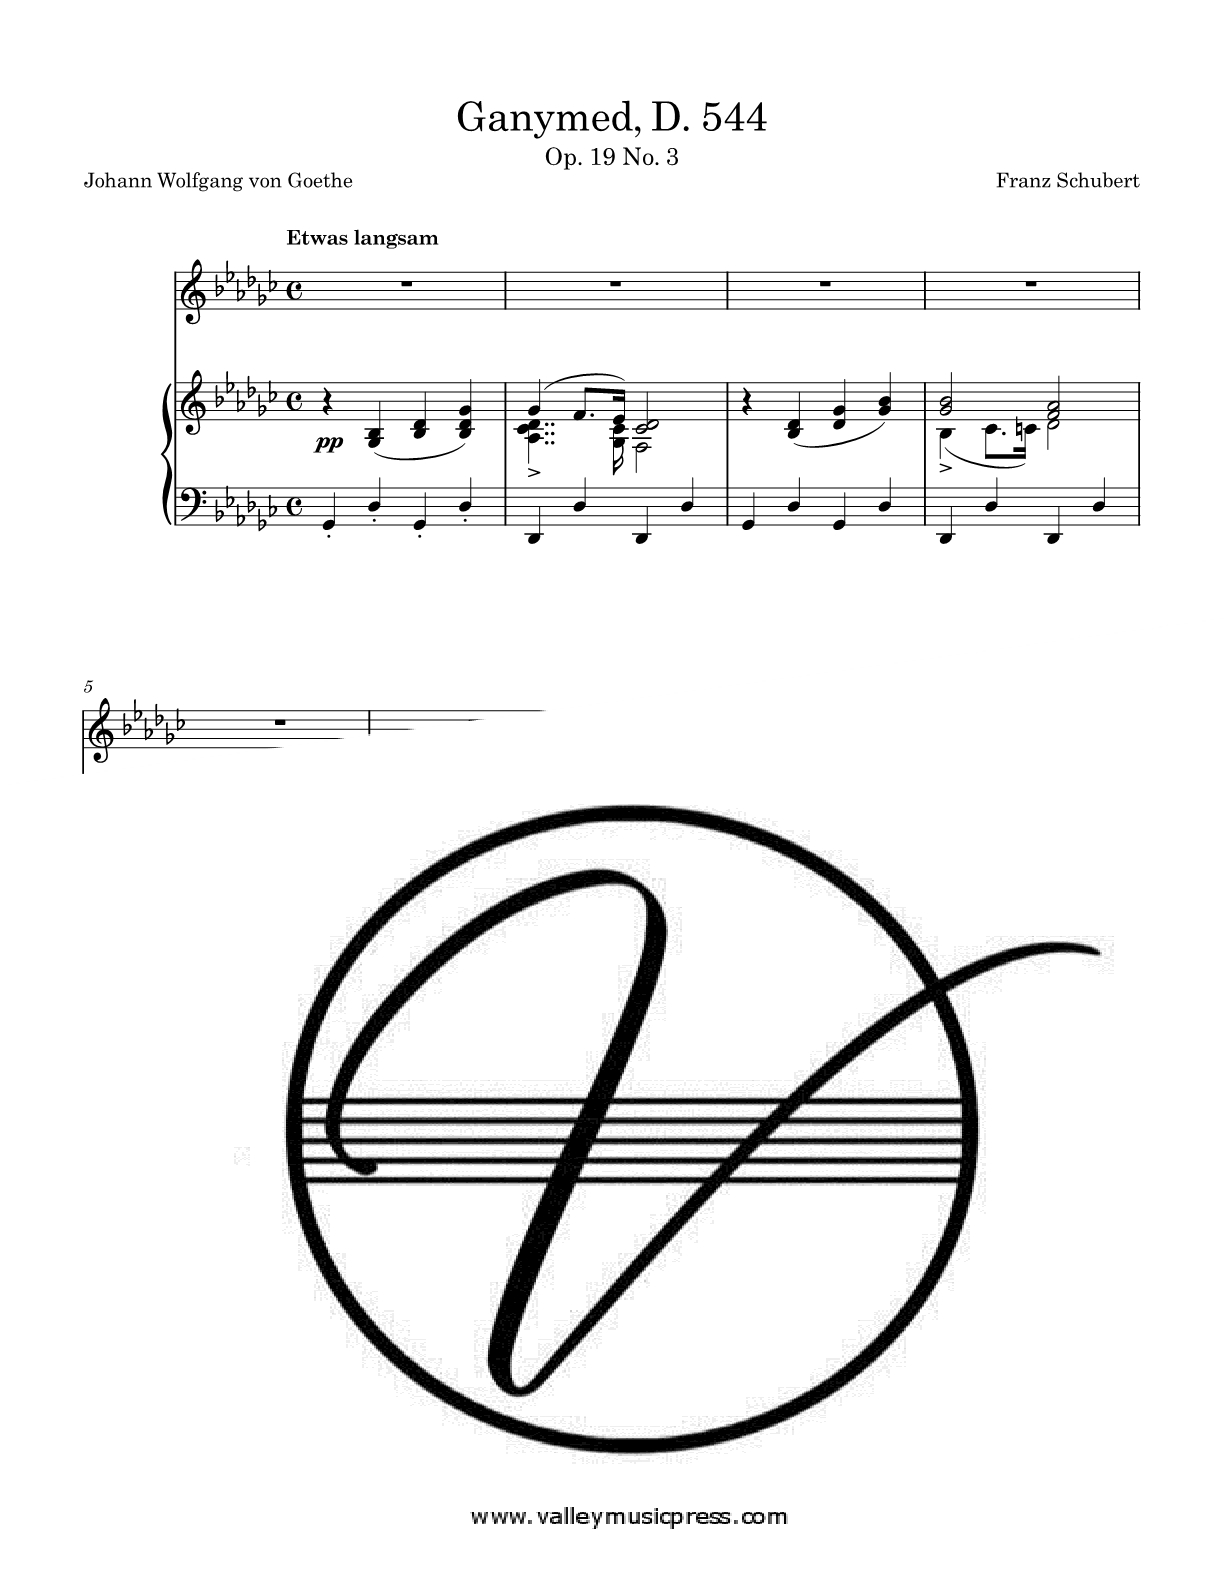 Schubert - Ganymed D. 544 Op. 19 No. 3 (Voice)